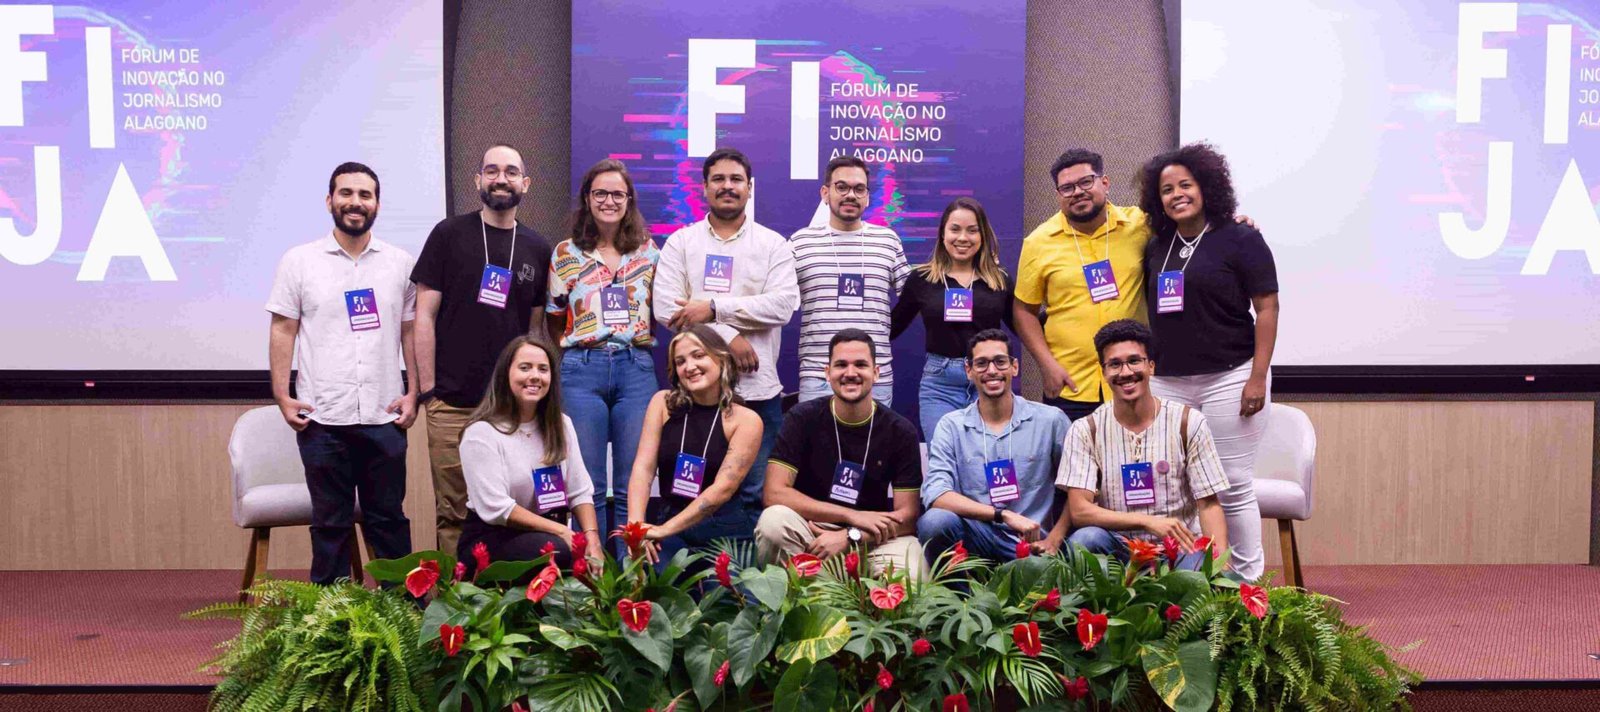 organizacao fija2 min scaled - Fórum de Inovação no Jornalismo Alagoano apresenta novos caminhos para a comunicação